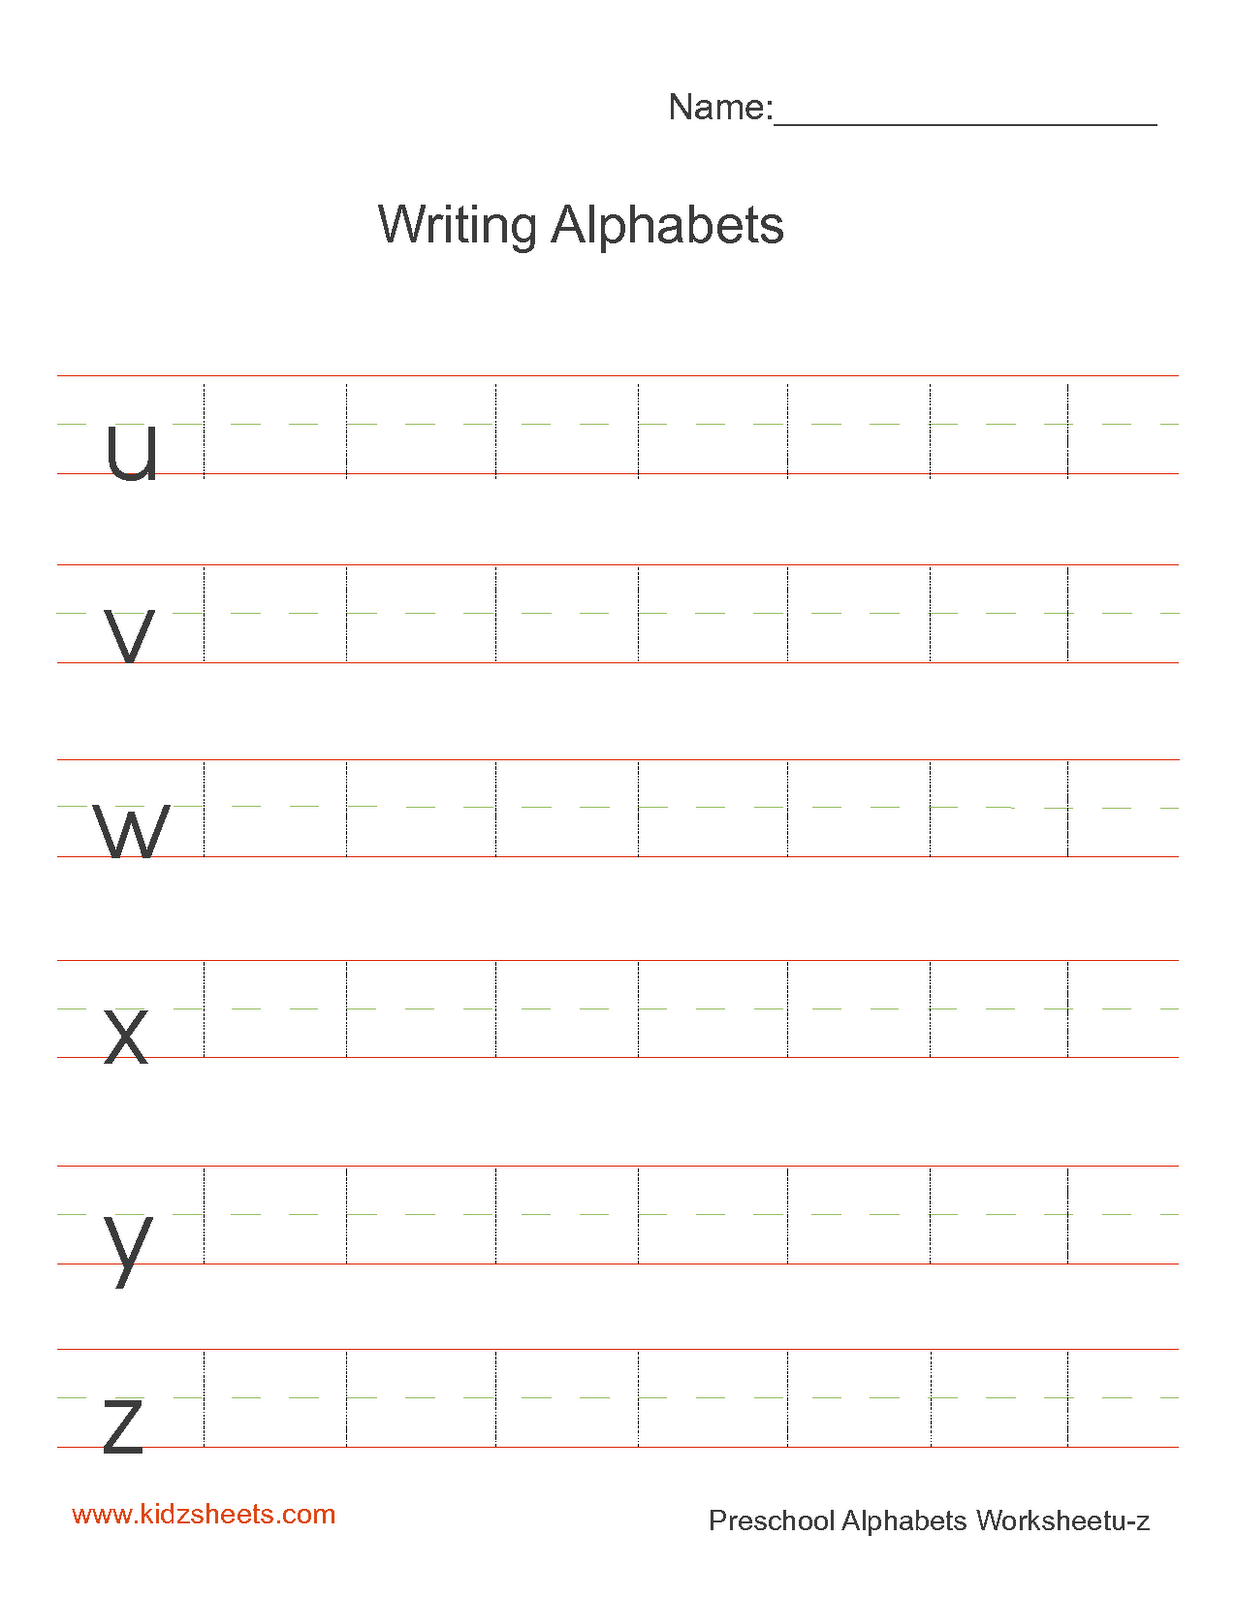 Free Printable Preschool Writing Numbers Worksheets Image